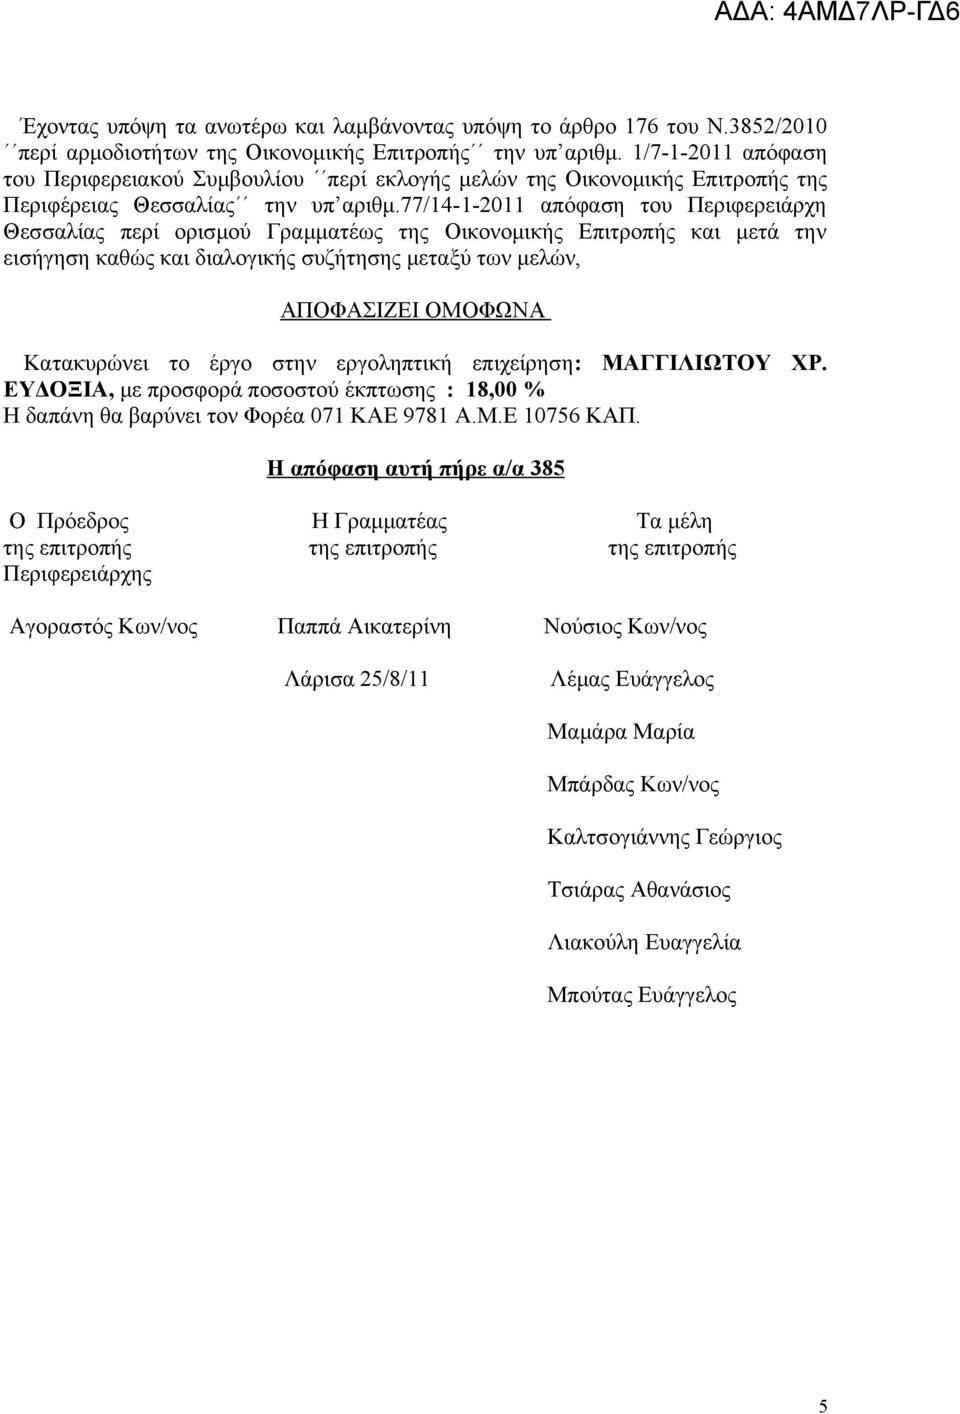 77/14-1-2011 απόφαση του Περιφερειάρχη Θεσσαλίας περί ορισμού Γραμματέως της Οικονομικής Επιτροπής και μετά την εισήγηση καθώς και διαλογικής συζήτησης μεταξύ των μελών, ΠΟΦΣΙΖΕΙ ΟΜΟΦΩΝ Κατακυρώνει